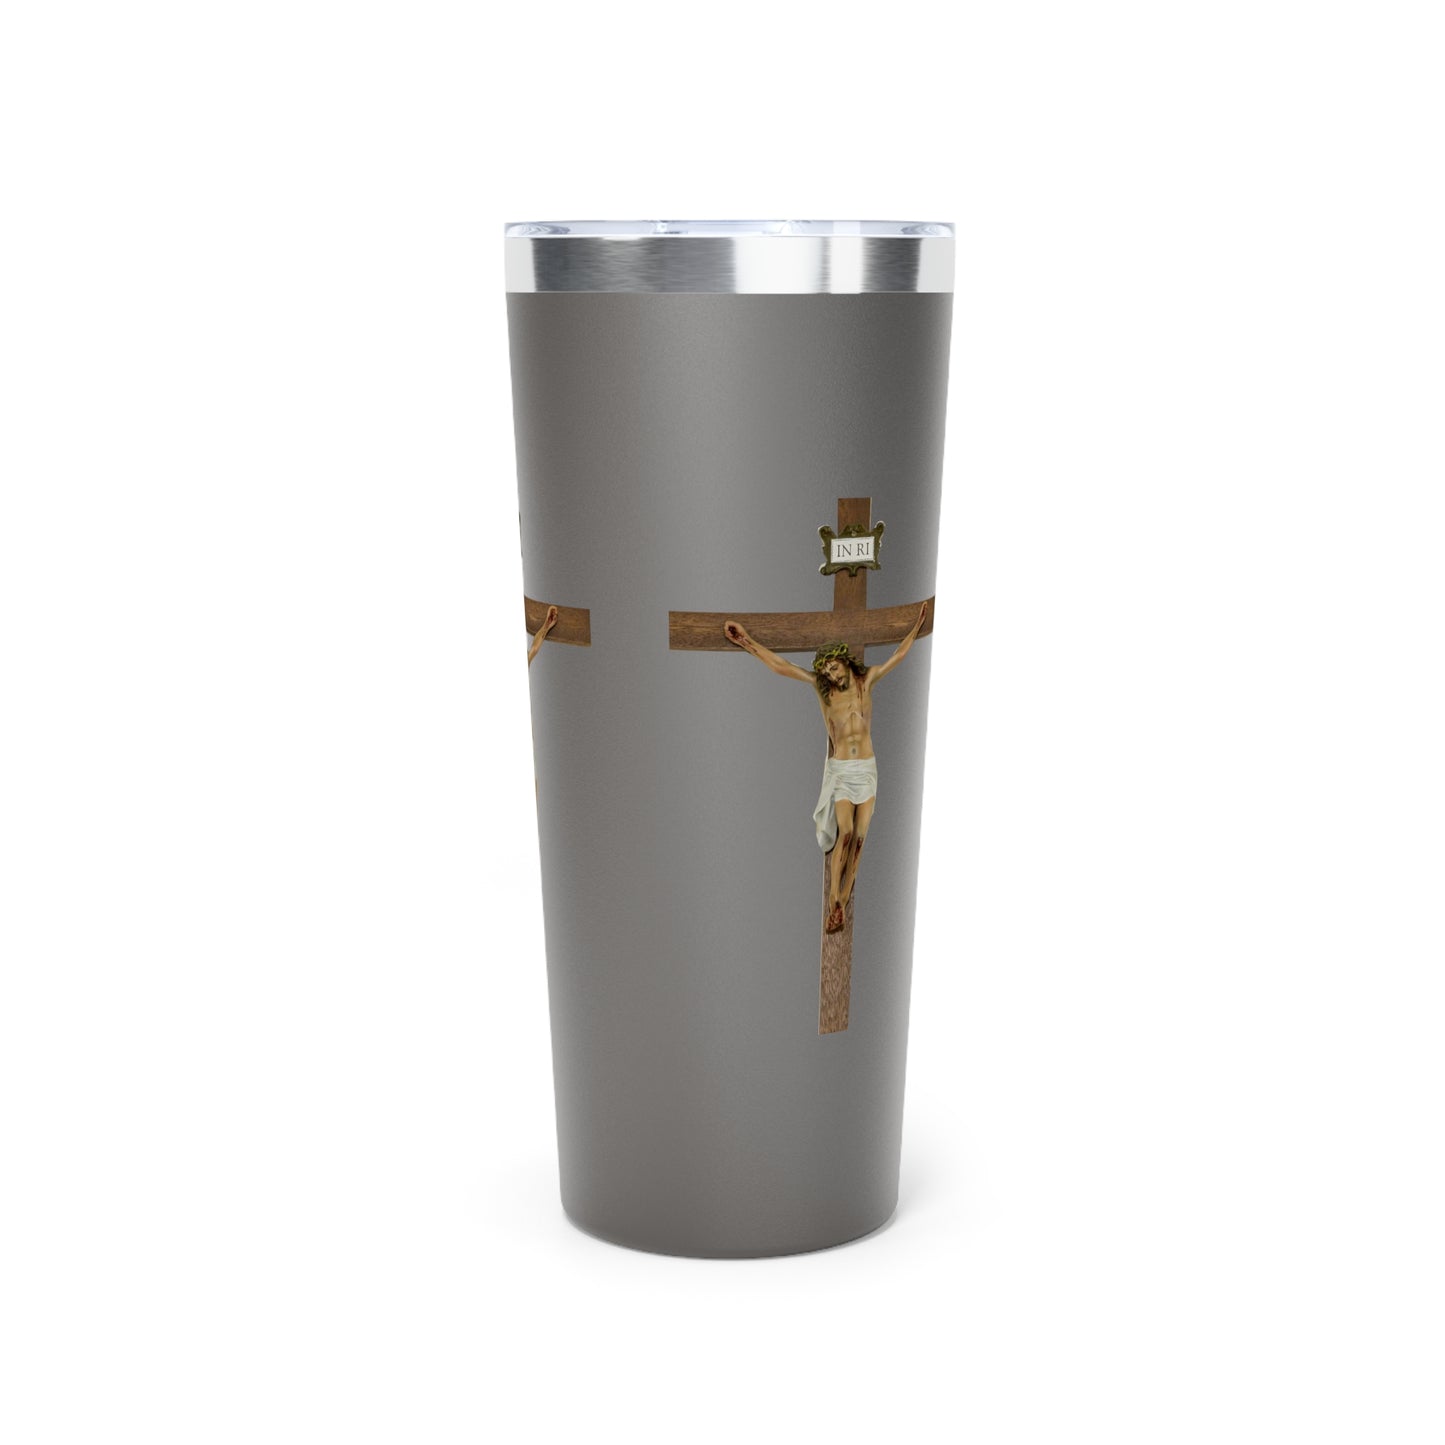 Jesus Crucified Copper Vacuum Insulated Tumbler, 22oz